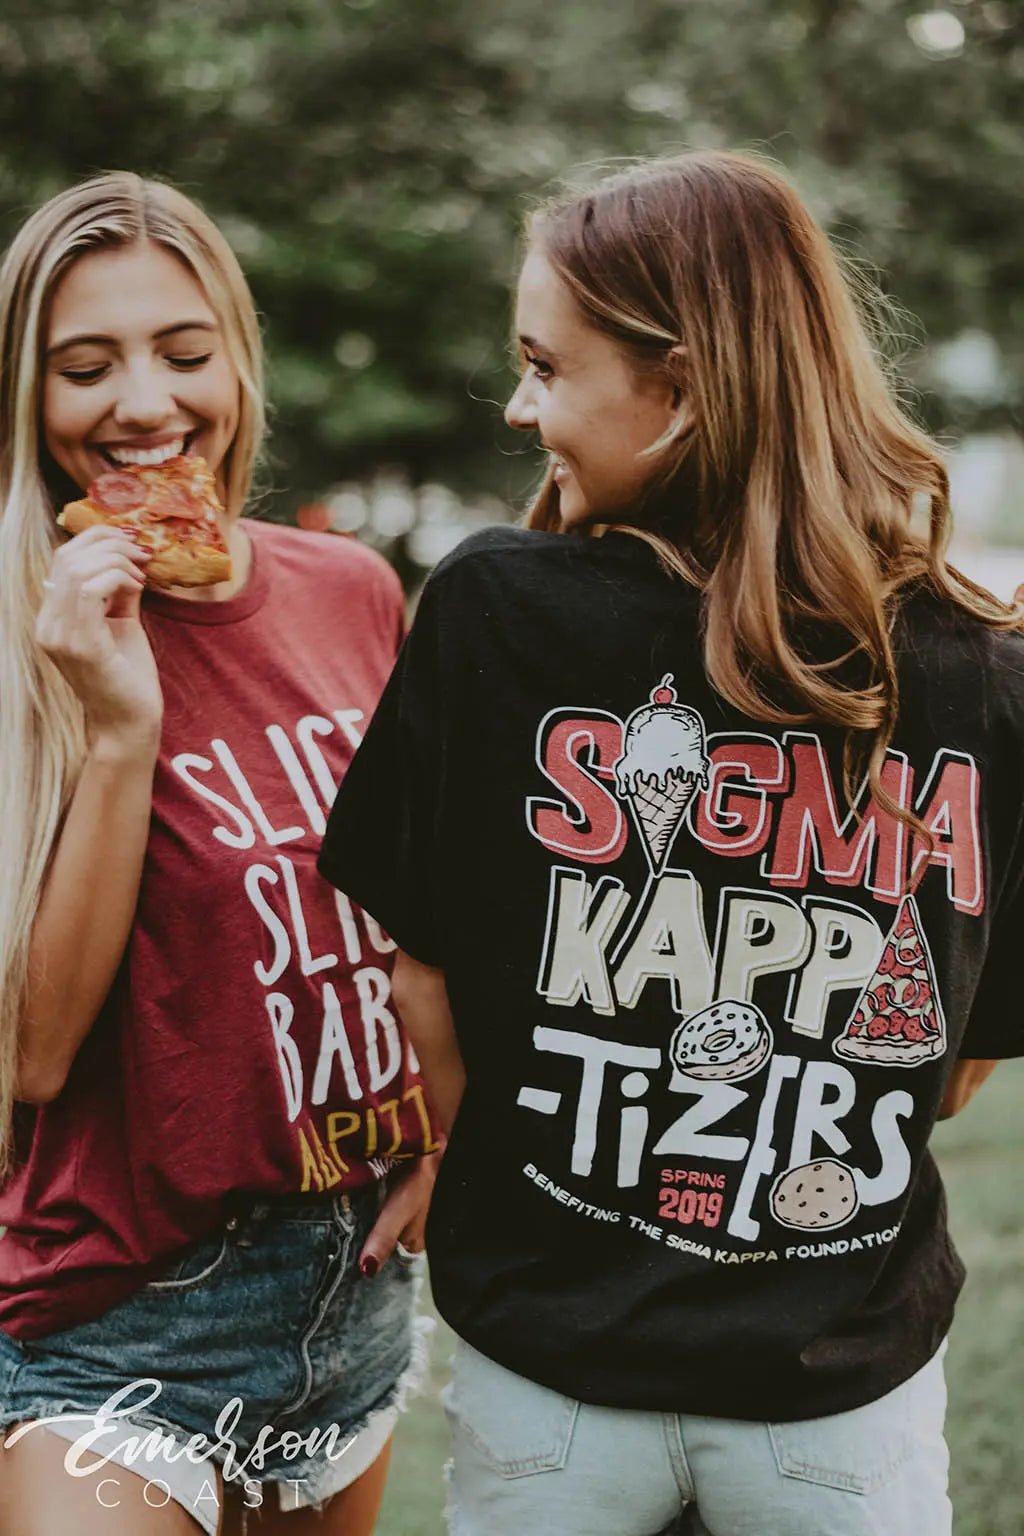 Sigma Kappa-tizers Philanthropy Tshirt